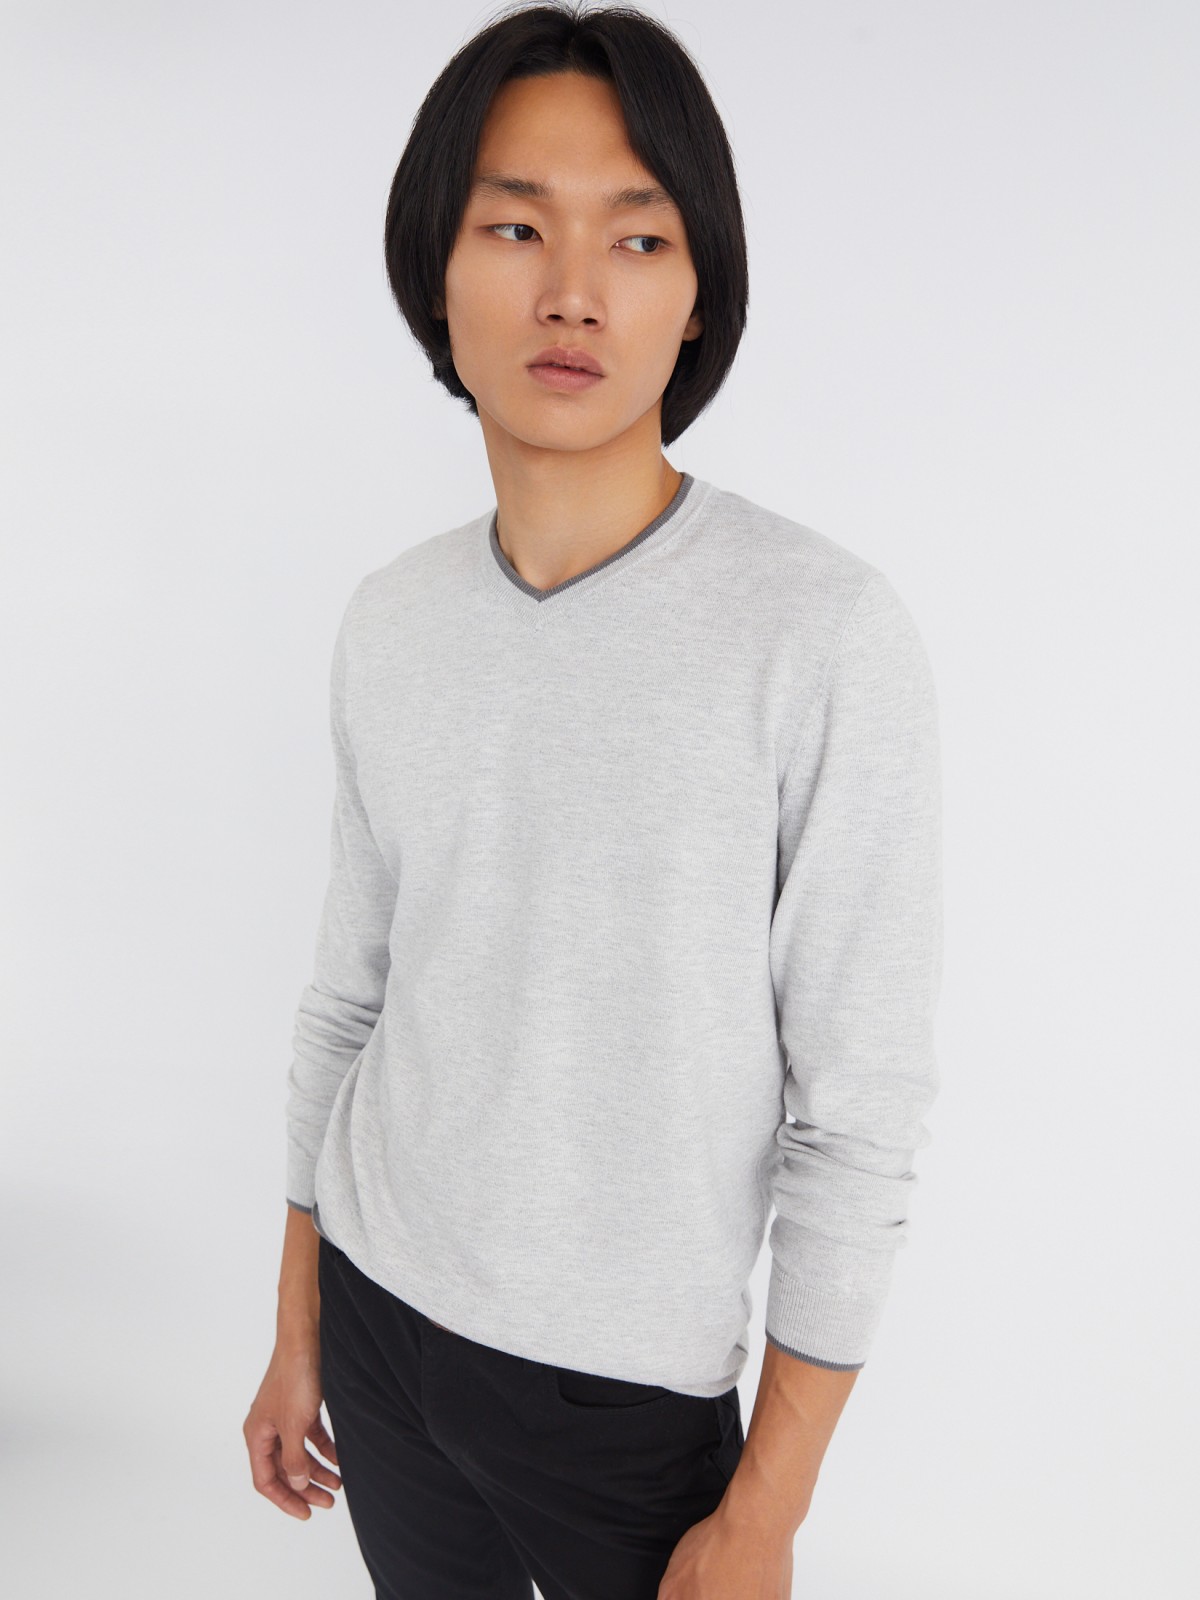 Тонкий трикотажный пуловер с треугольным вырезом и длинным рукавом zolla 213336165022, цвет светло-серый, размер L - фото 3